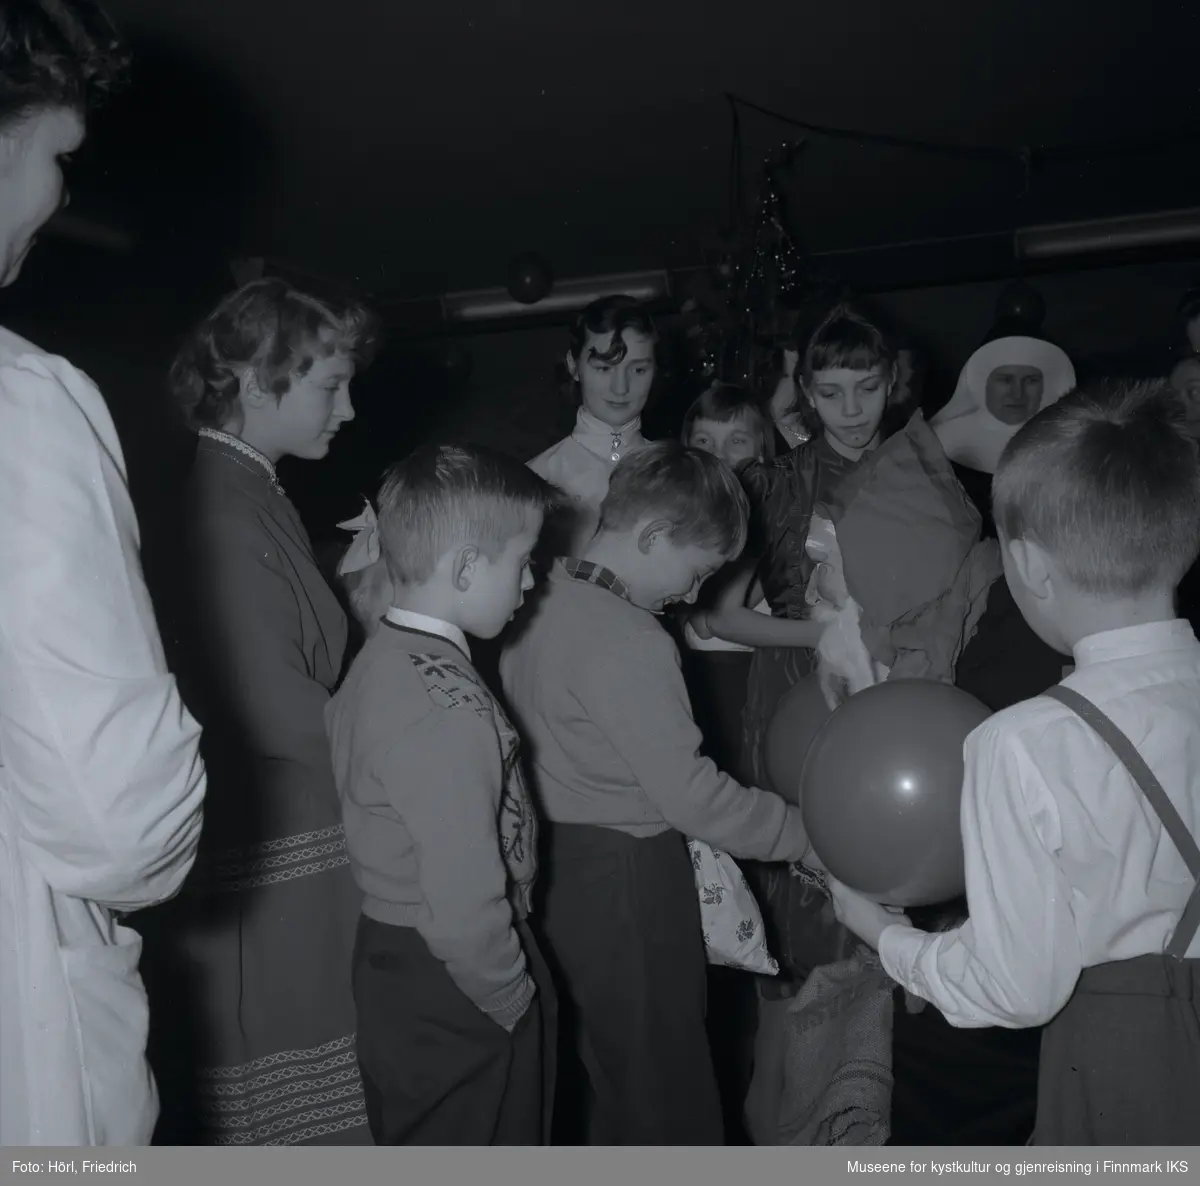 Den katolske menigheten i Hammerfest feirer juletrefest i 1957. En gutt har fått en gave fra julenissen som snakker til ham mens han slår ned blikket og ler. Andre barn og voksne står rundt dem og følger med.  
I bakgrunnen ser man juletreet og luftballonger.